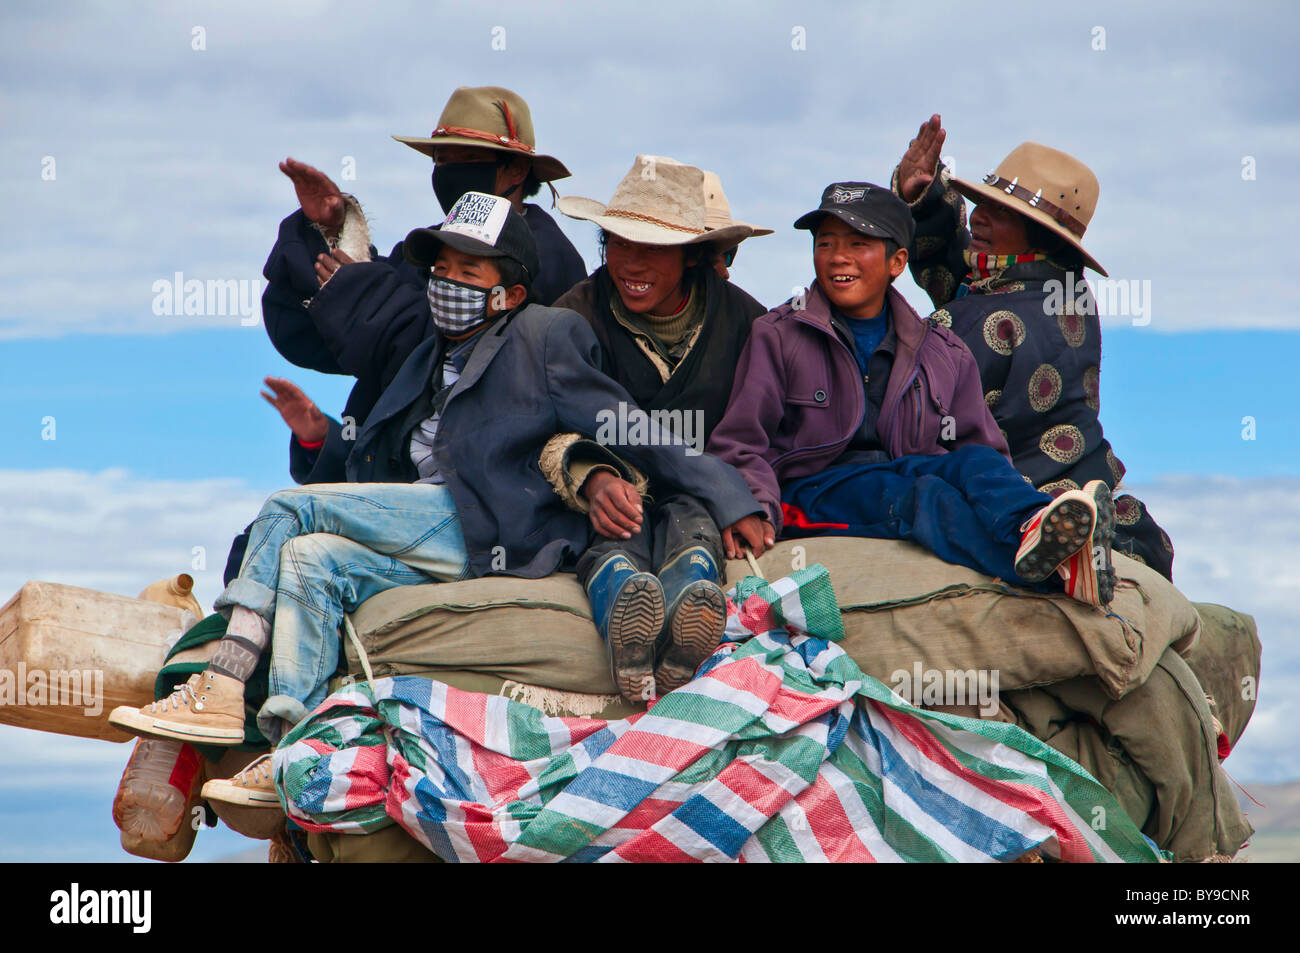 Peregrinos en un tractor, en el oeste de Tíbet, Tíbet, Asia Central Foto de stock